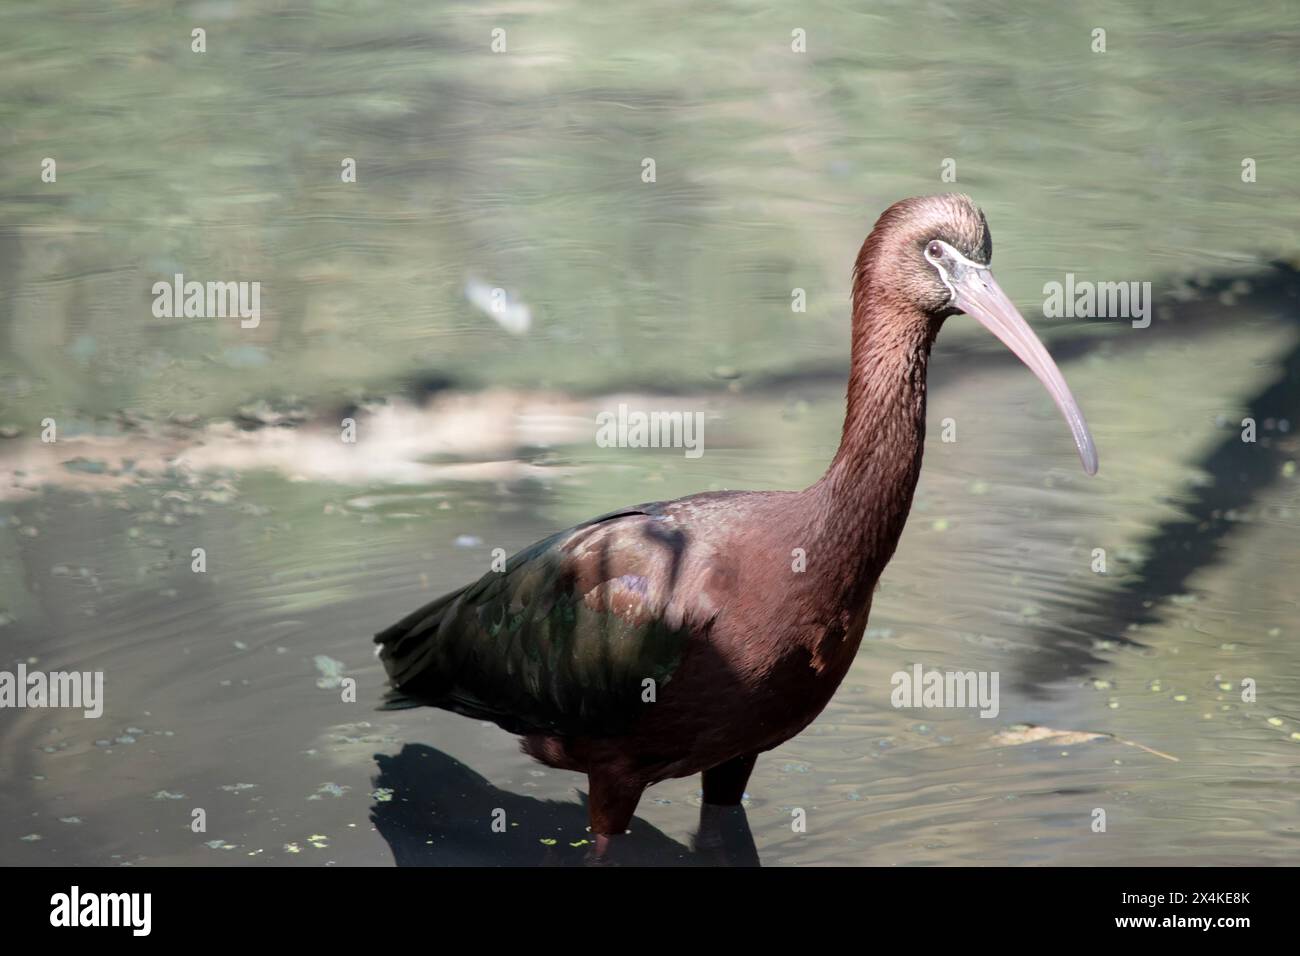 Le cou ibis brillant est brun rougeâtre et le corps est brun bronze avec un éclat métallique irisé sur les ailes. Banque D'Images